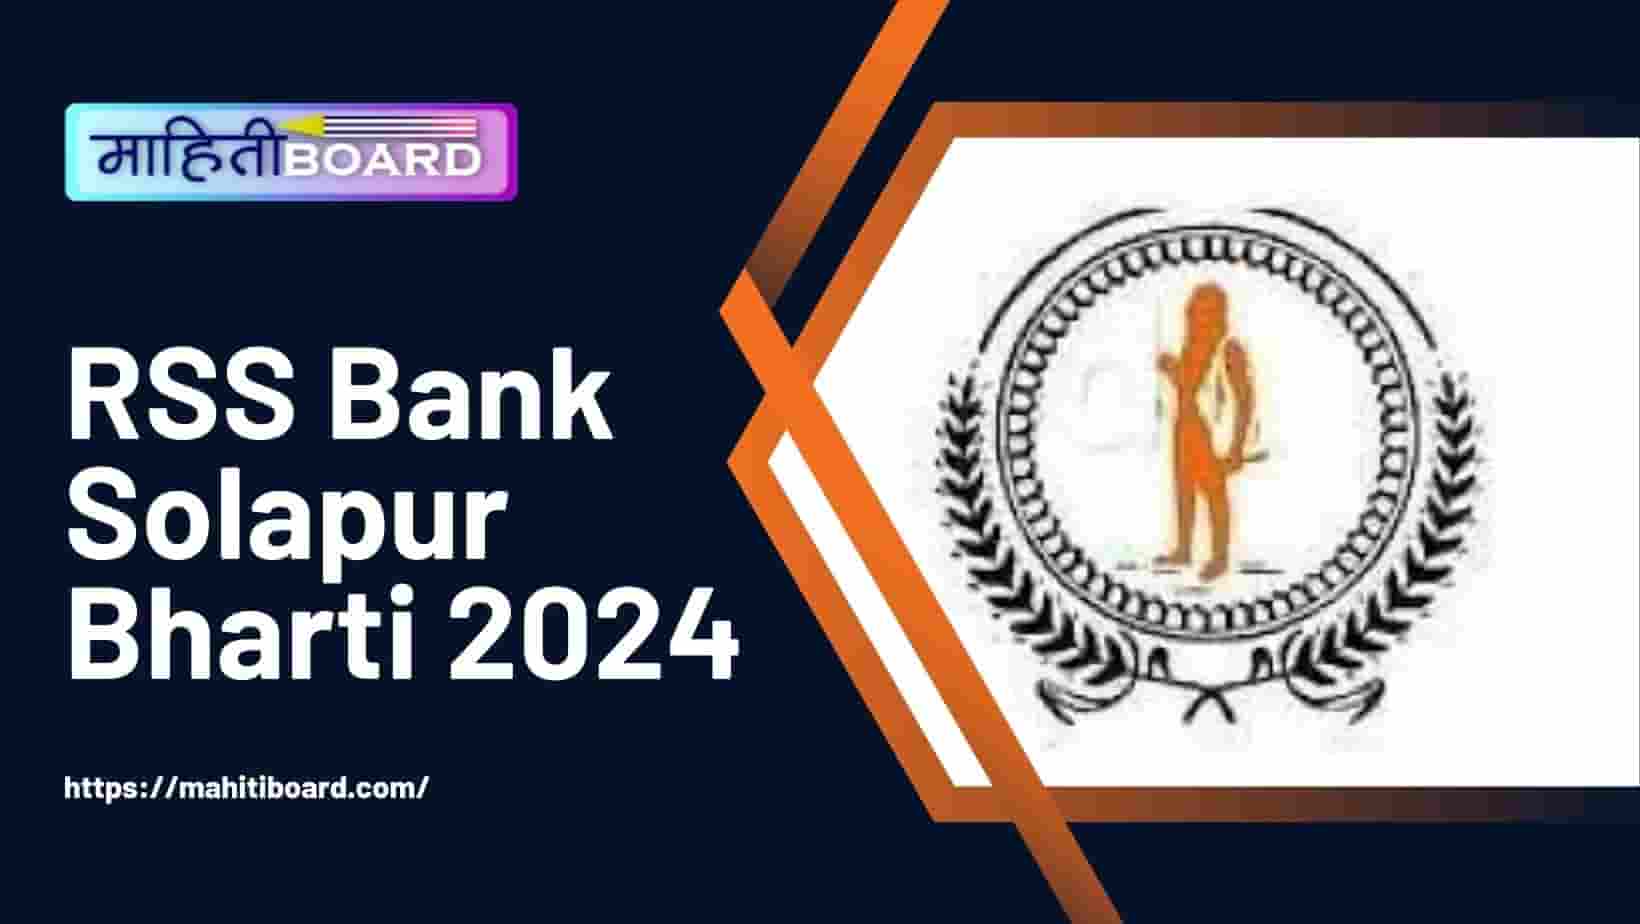 RSS Bank Solapur Bharti 2024